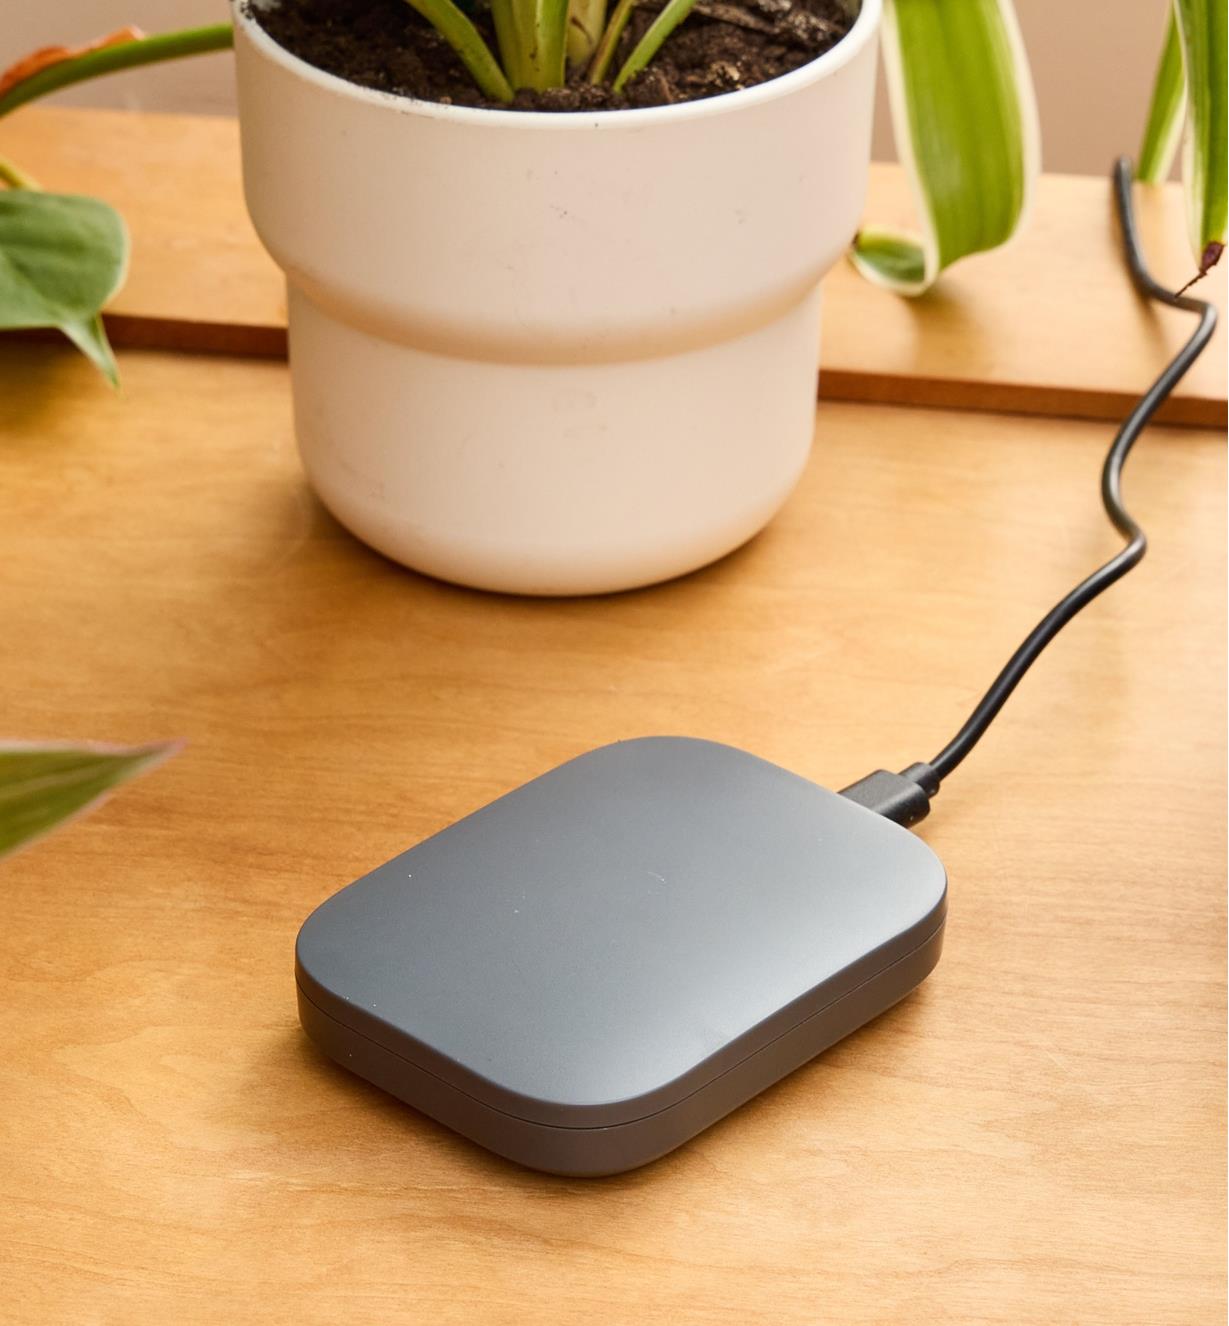 Borne Wi-Fi sur une table en bois à côté d'une plante en pot